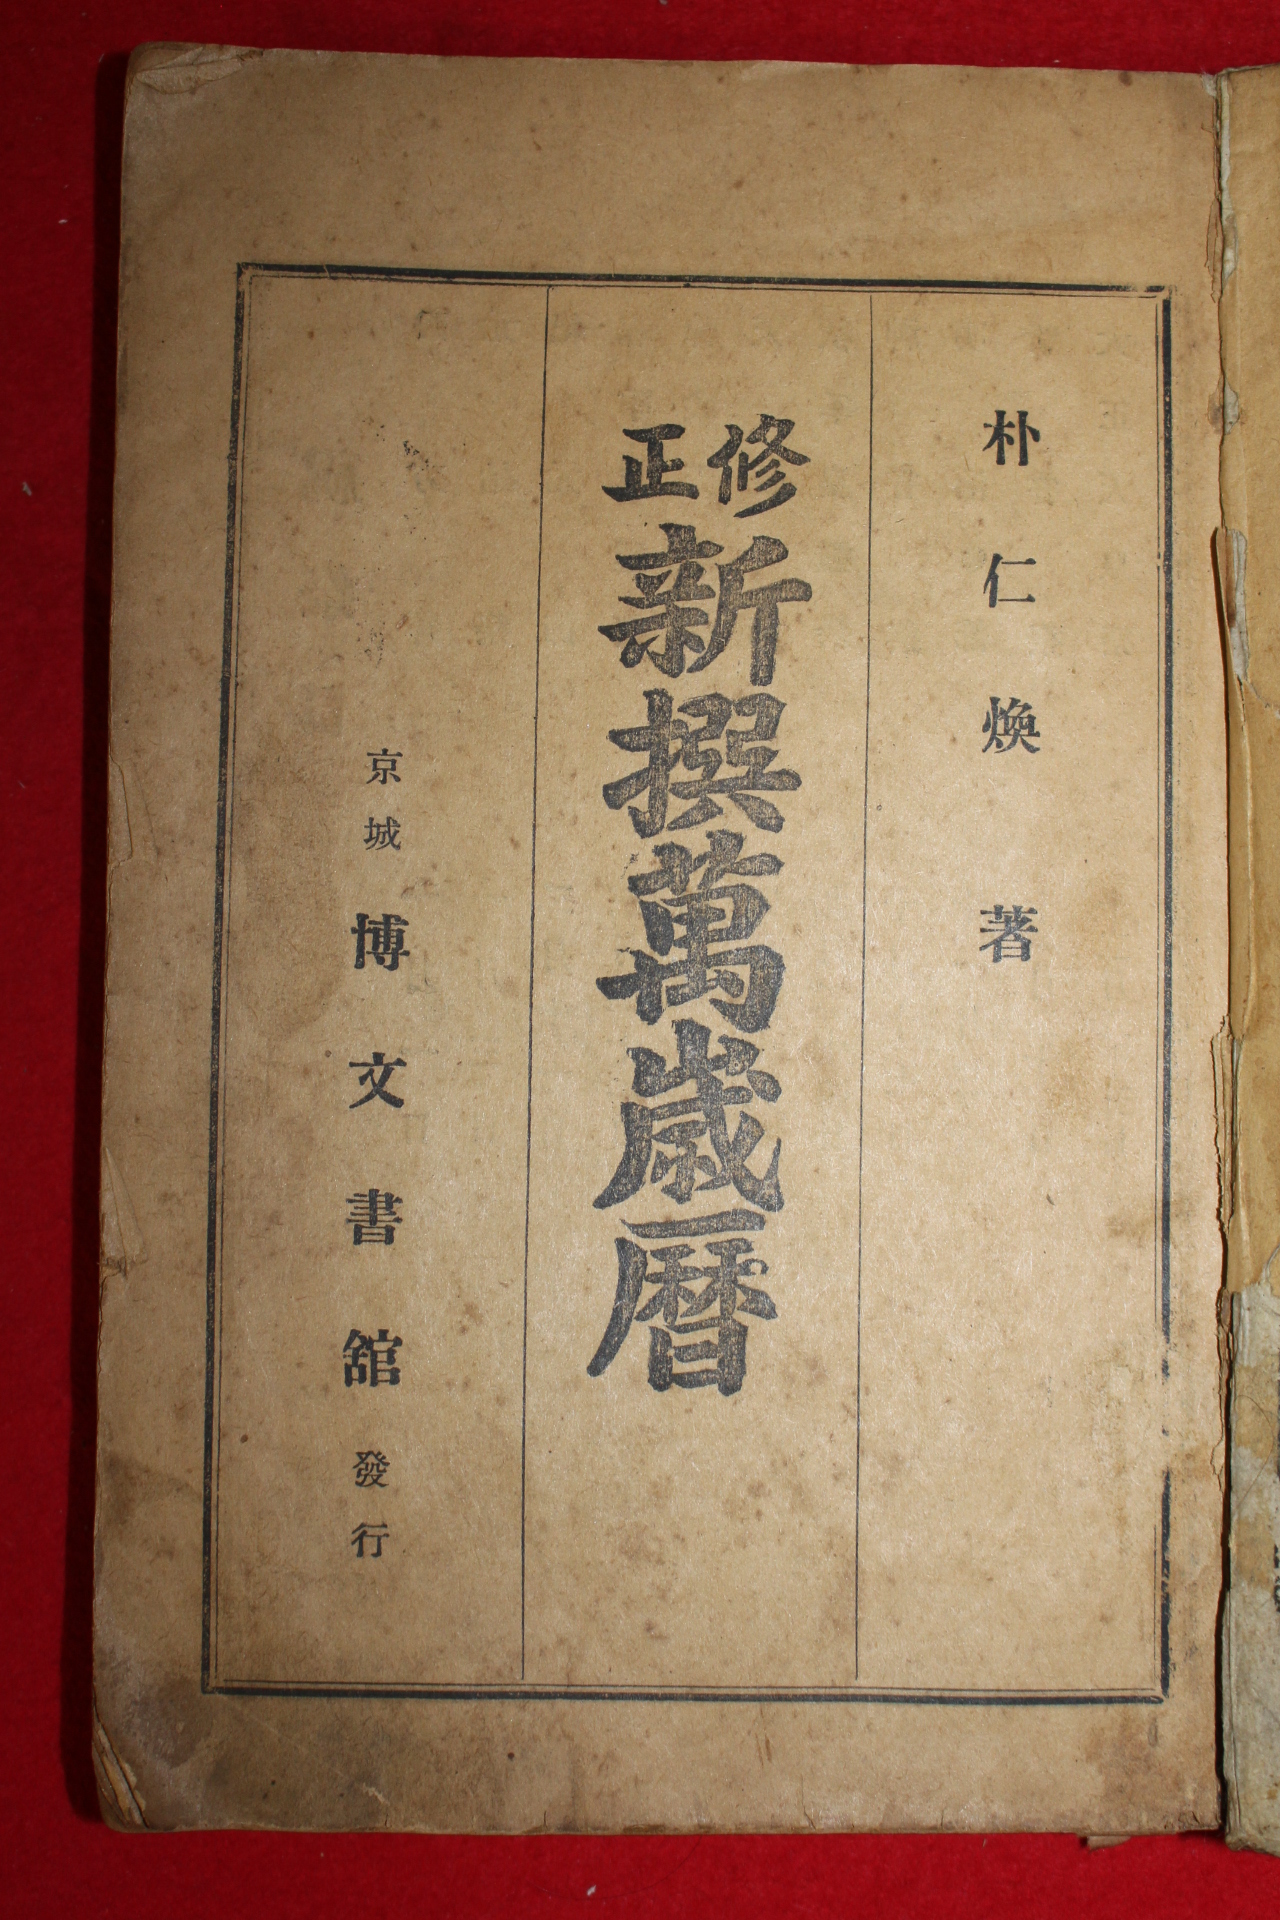 1935년 박인환(朴仁煥) 수정 신선만세력(新選萬歲曆)